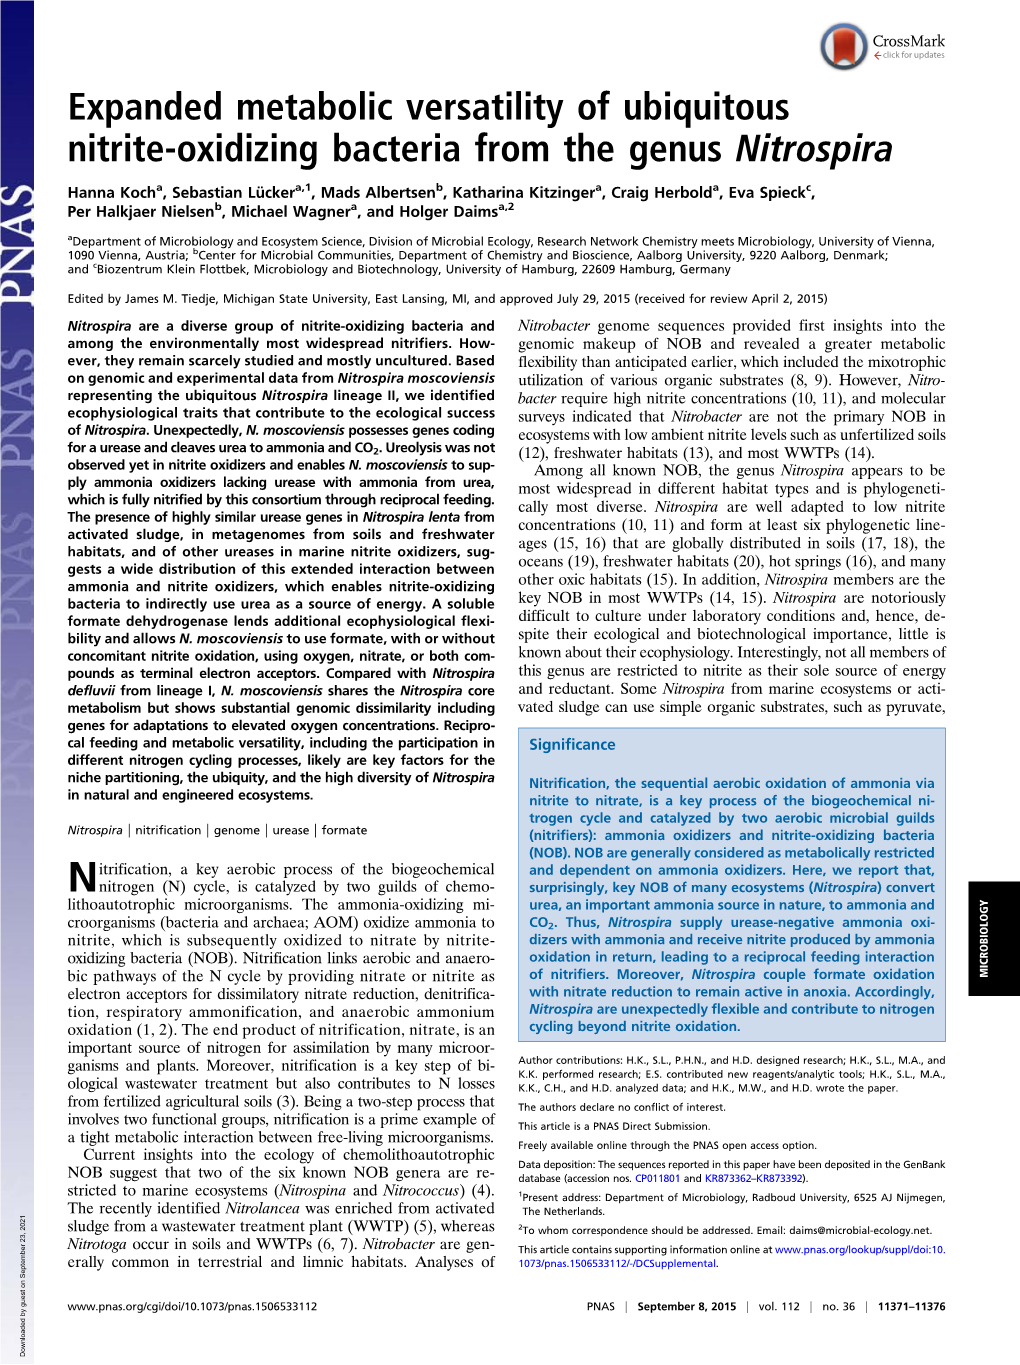 Expanded Metabolic Versatility of Ubiquitous Nitrite-Oxidizing Bacteria from the Genus Nitrospira